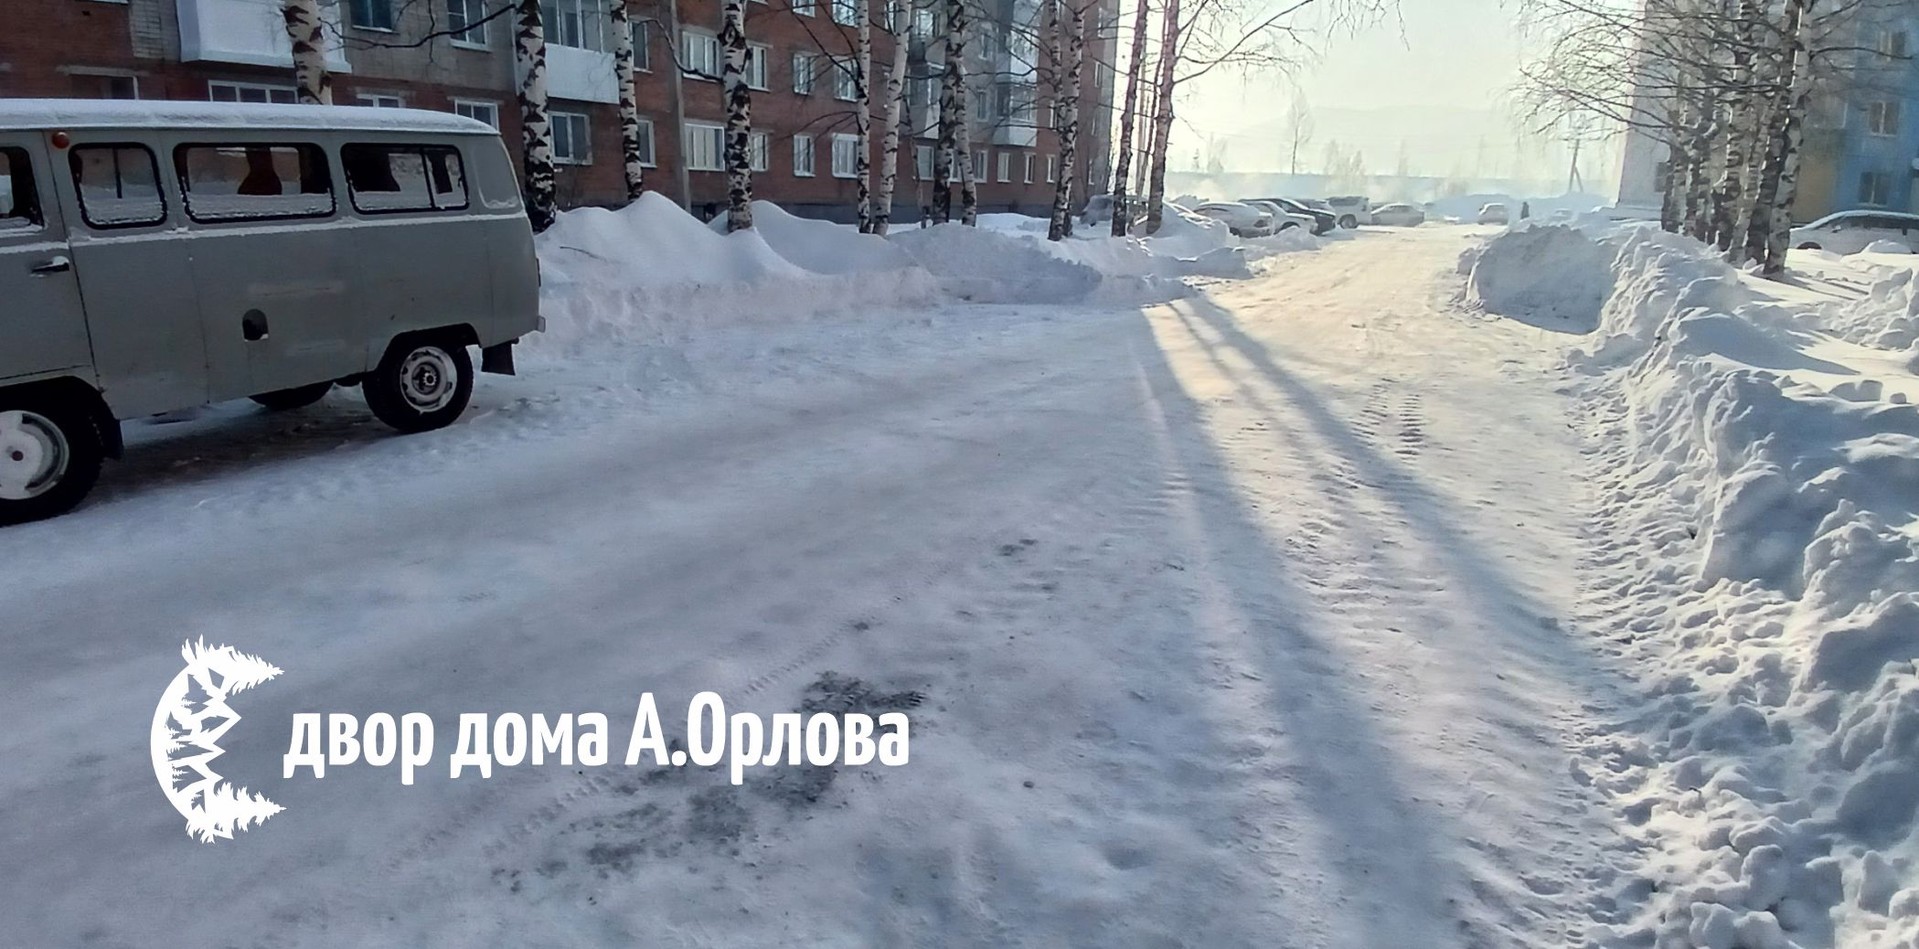 Таштагол: Андрей Орлов, Владимир Макута и простые горожане - кто лучше справился со снегопадом?